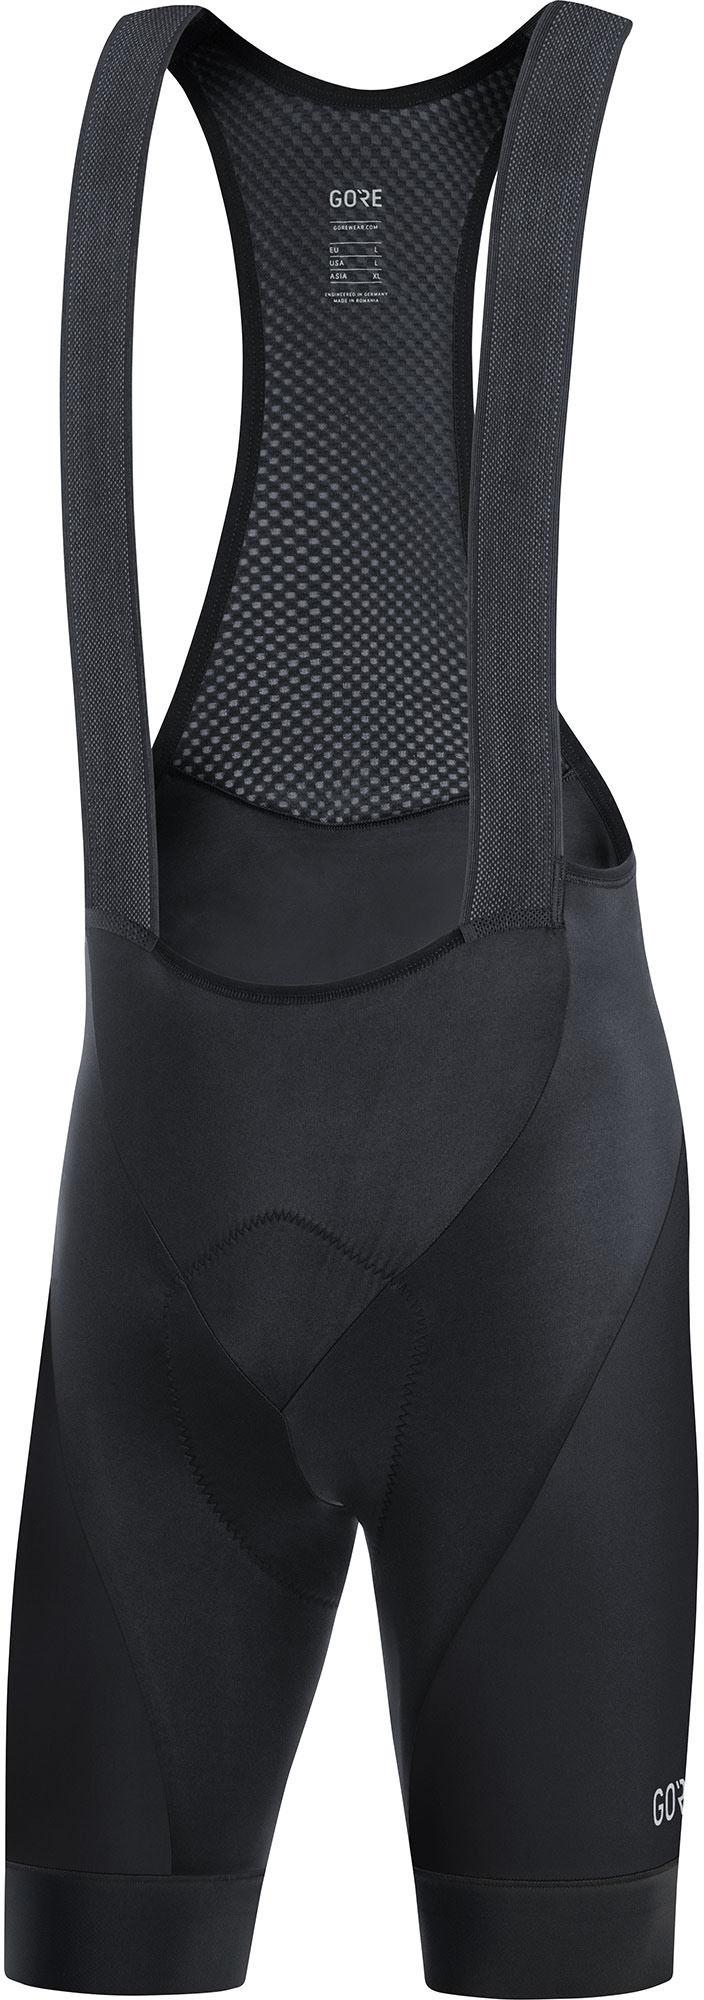 Gorewear C3 Bib Shorts Plus - Black